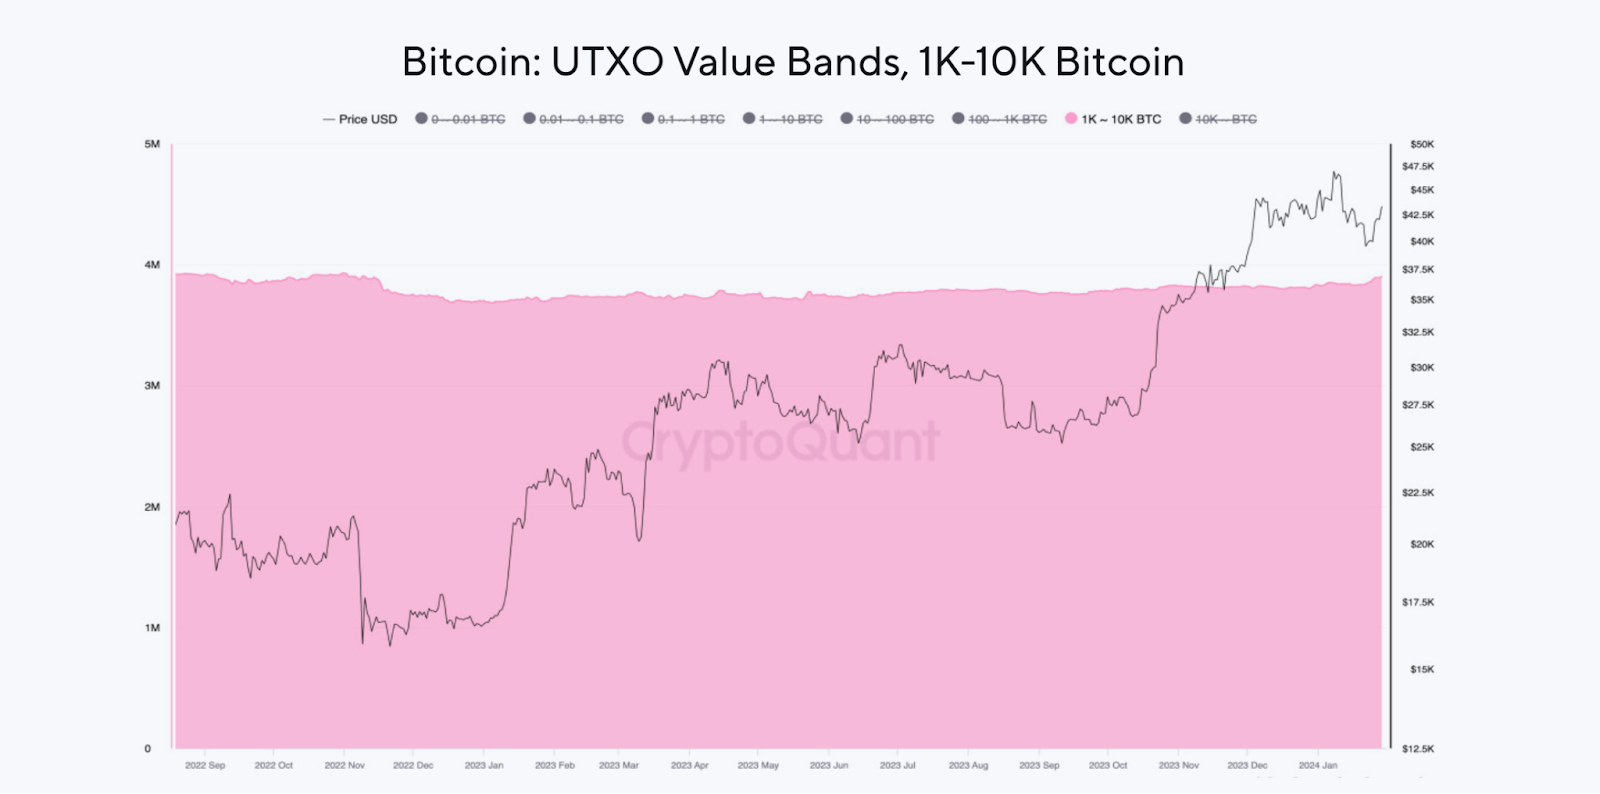 Bandas de valor de Bitcoin UTXO. Fuente: CryptoQuant